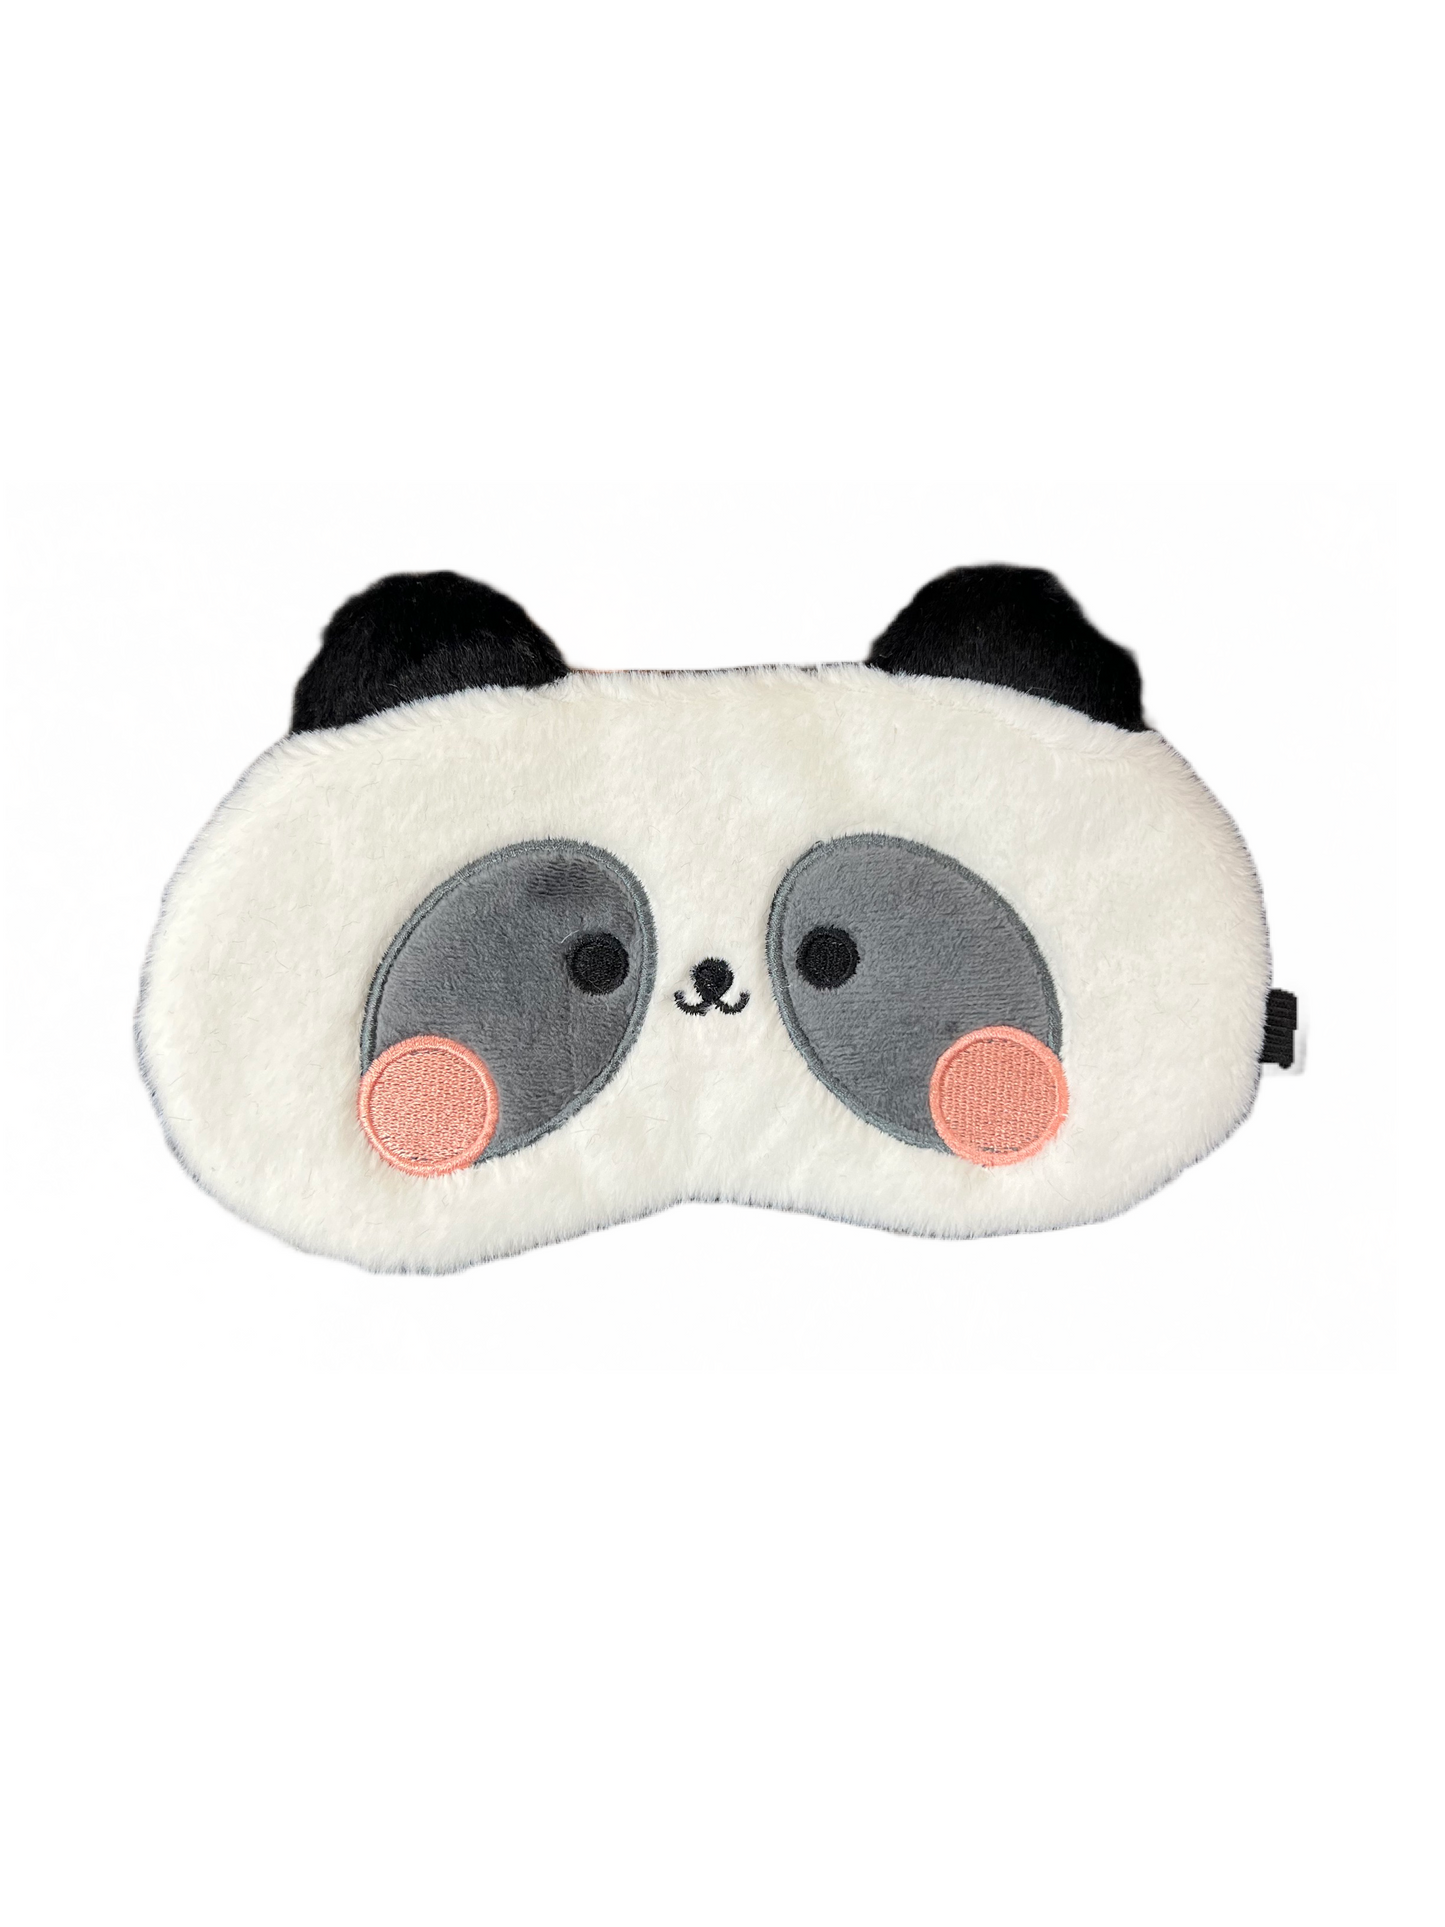 On Sale - Children’s Sleep Eye Mask- Panda